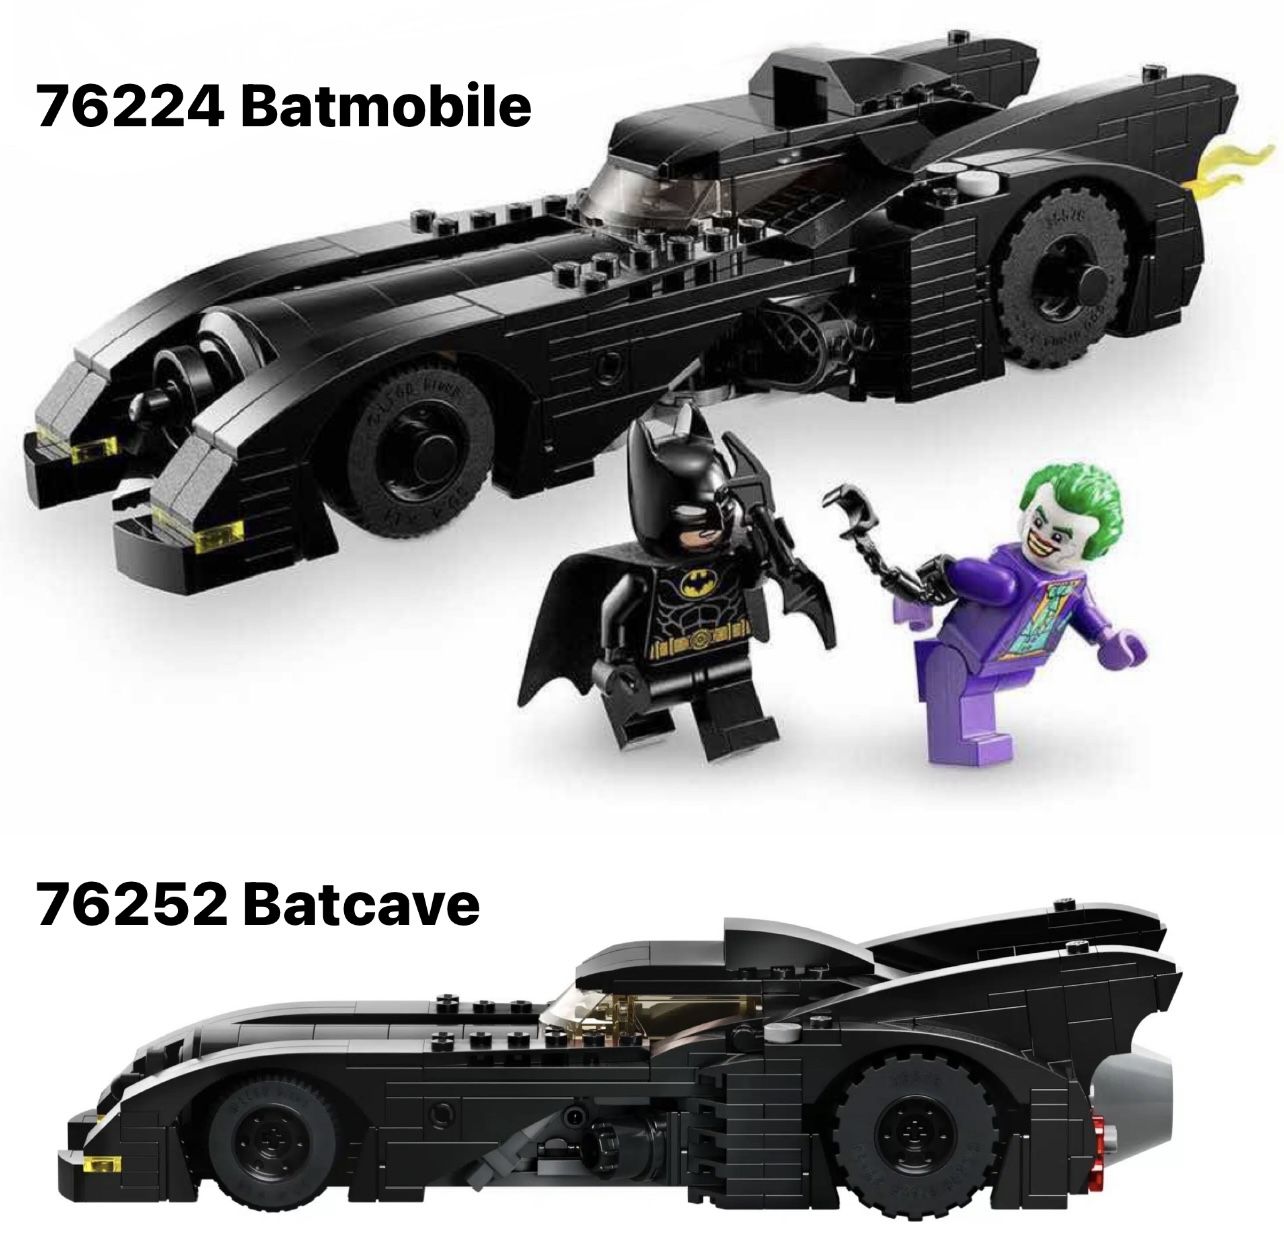 LEGO Batman 76224 Batmobile 1989 mit Jack Nicholson Joker